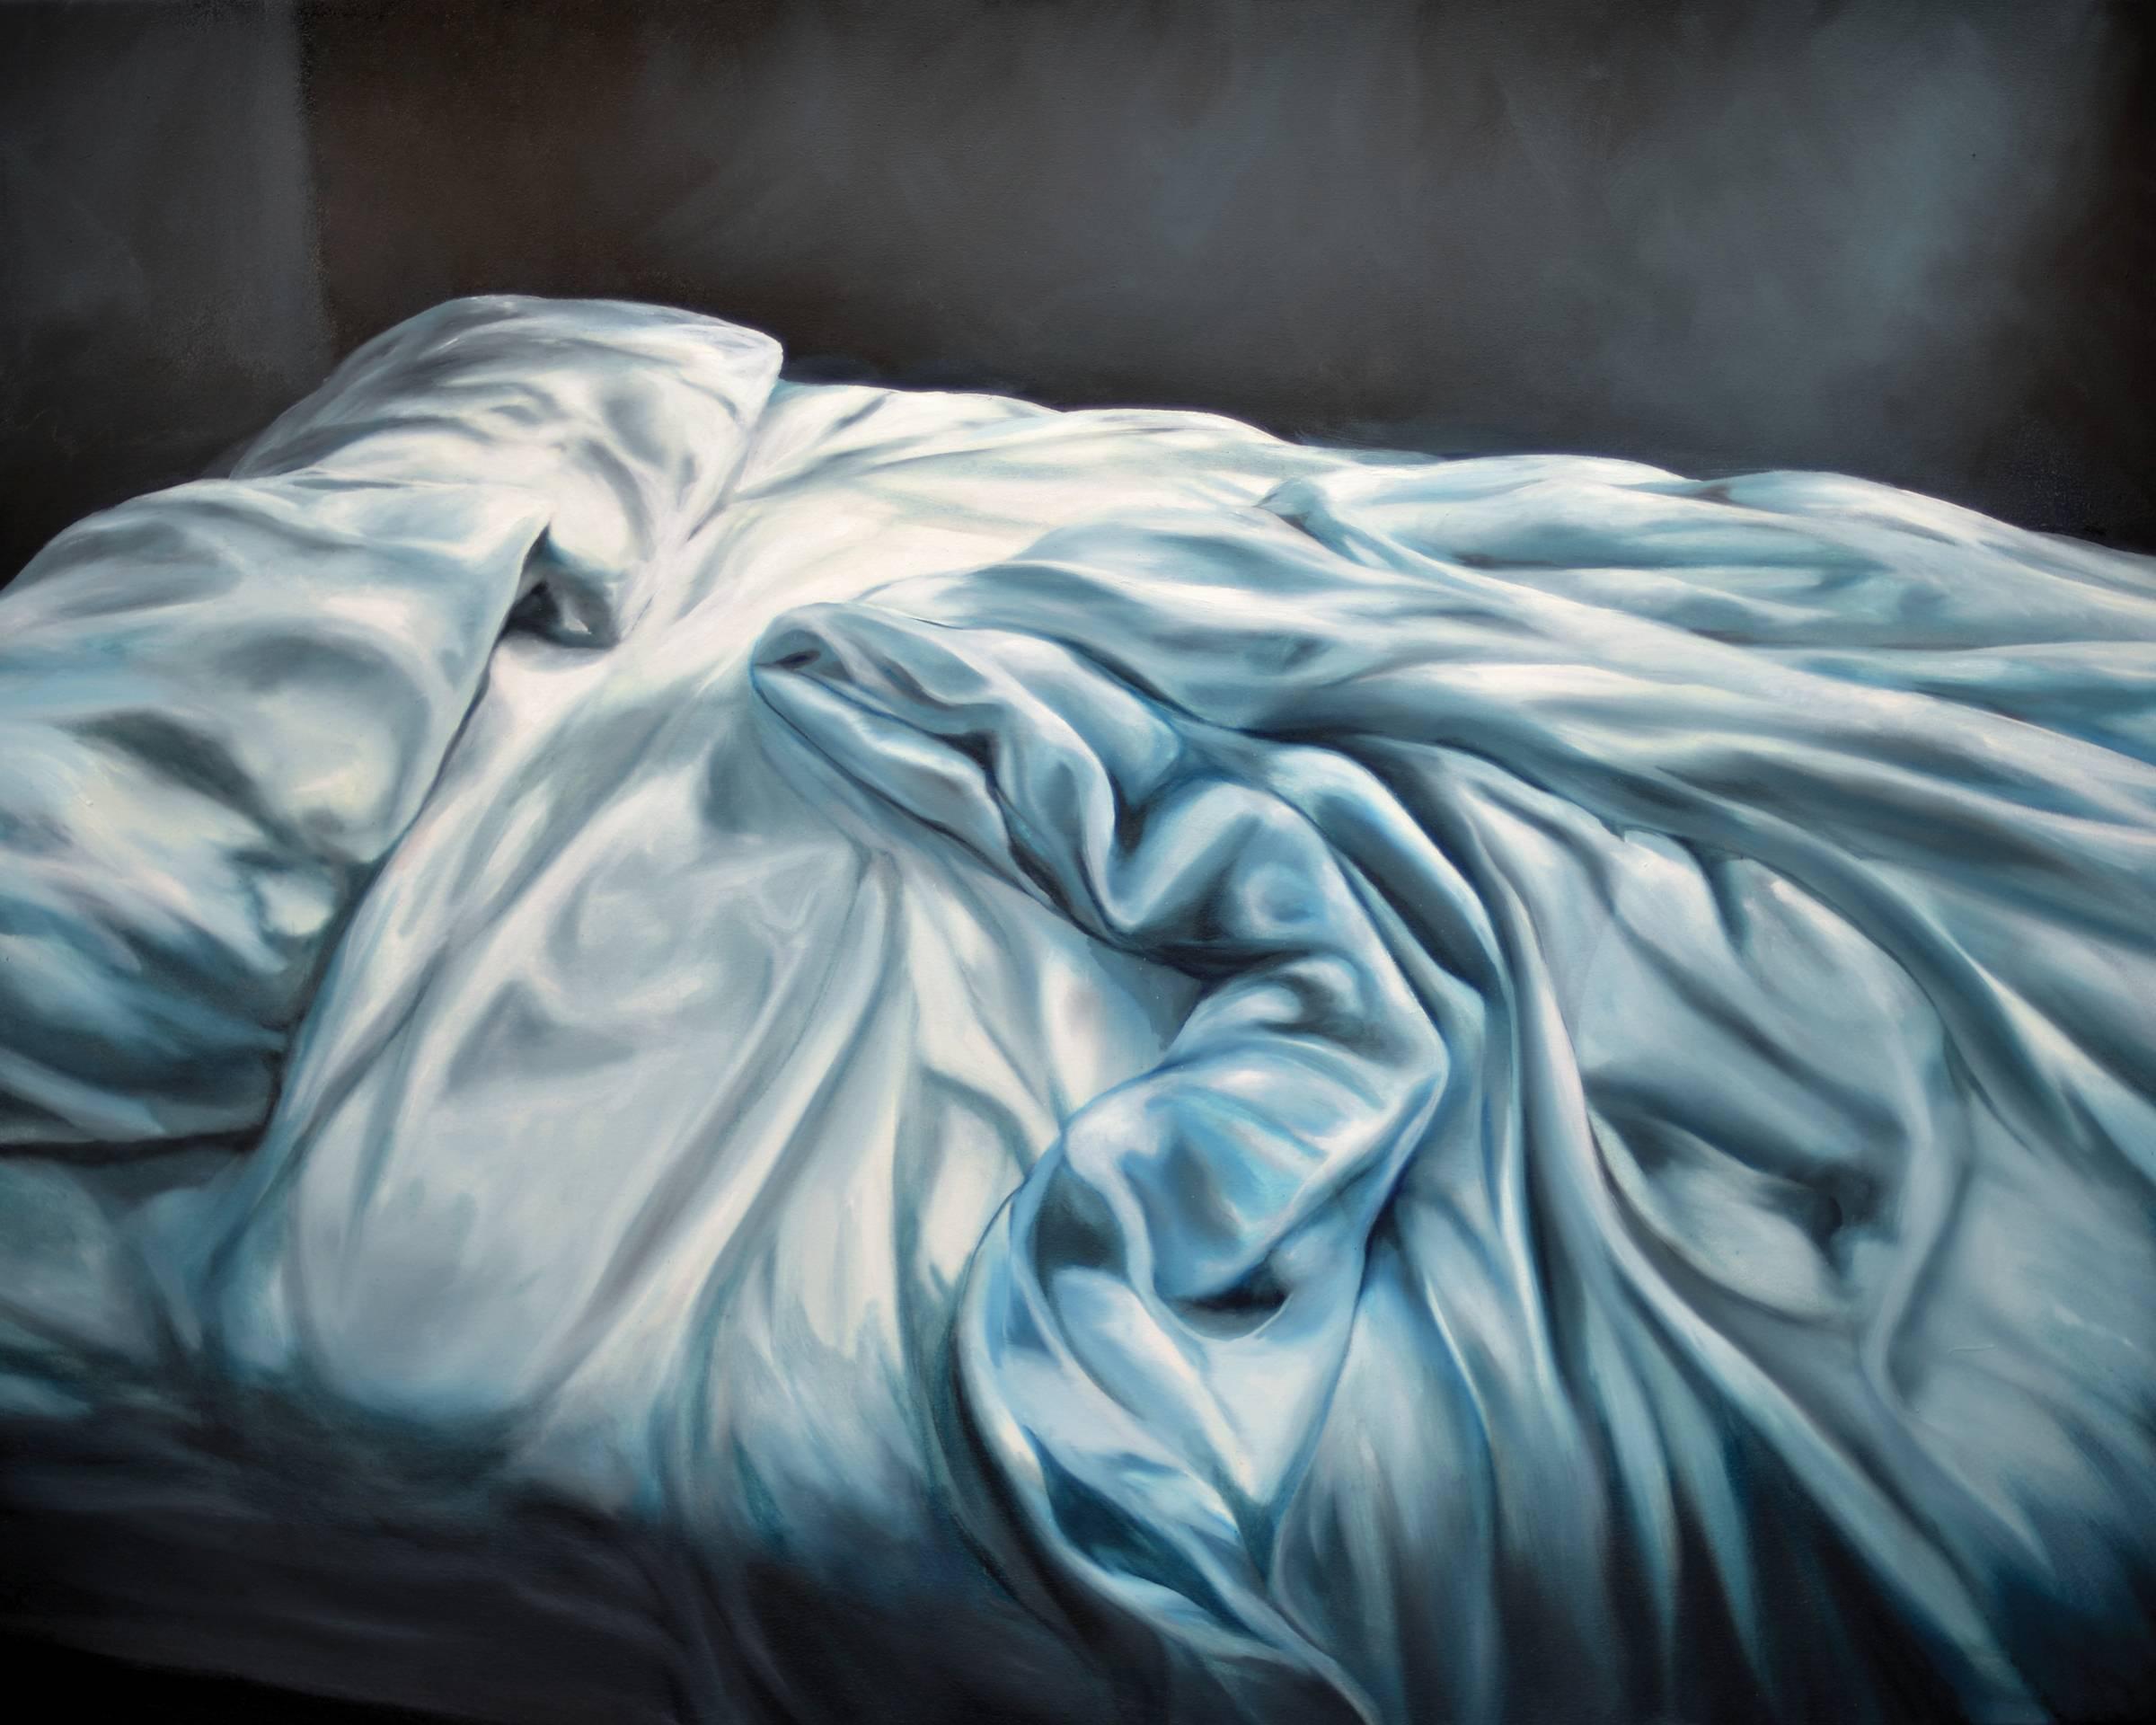 Eric Zener Interior Painting – DREAM HATCH, schmutziges Bett, fotorealistisch, Blätter, blau, weiß, Bett